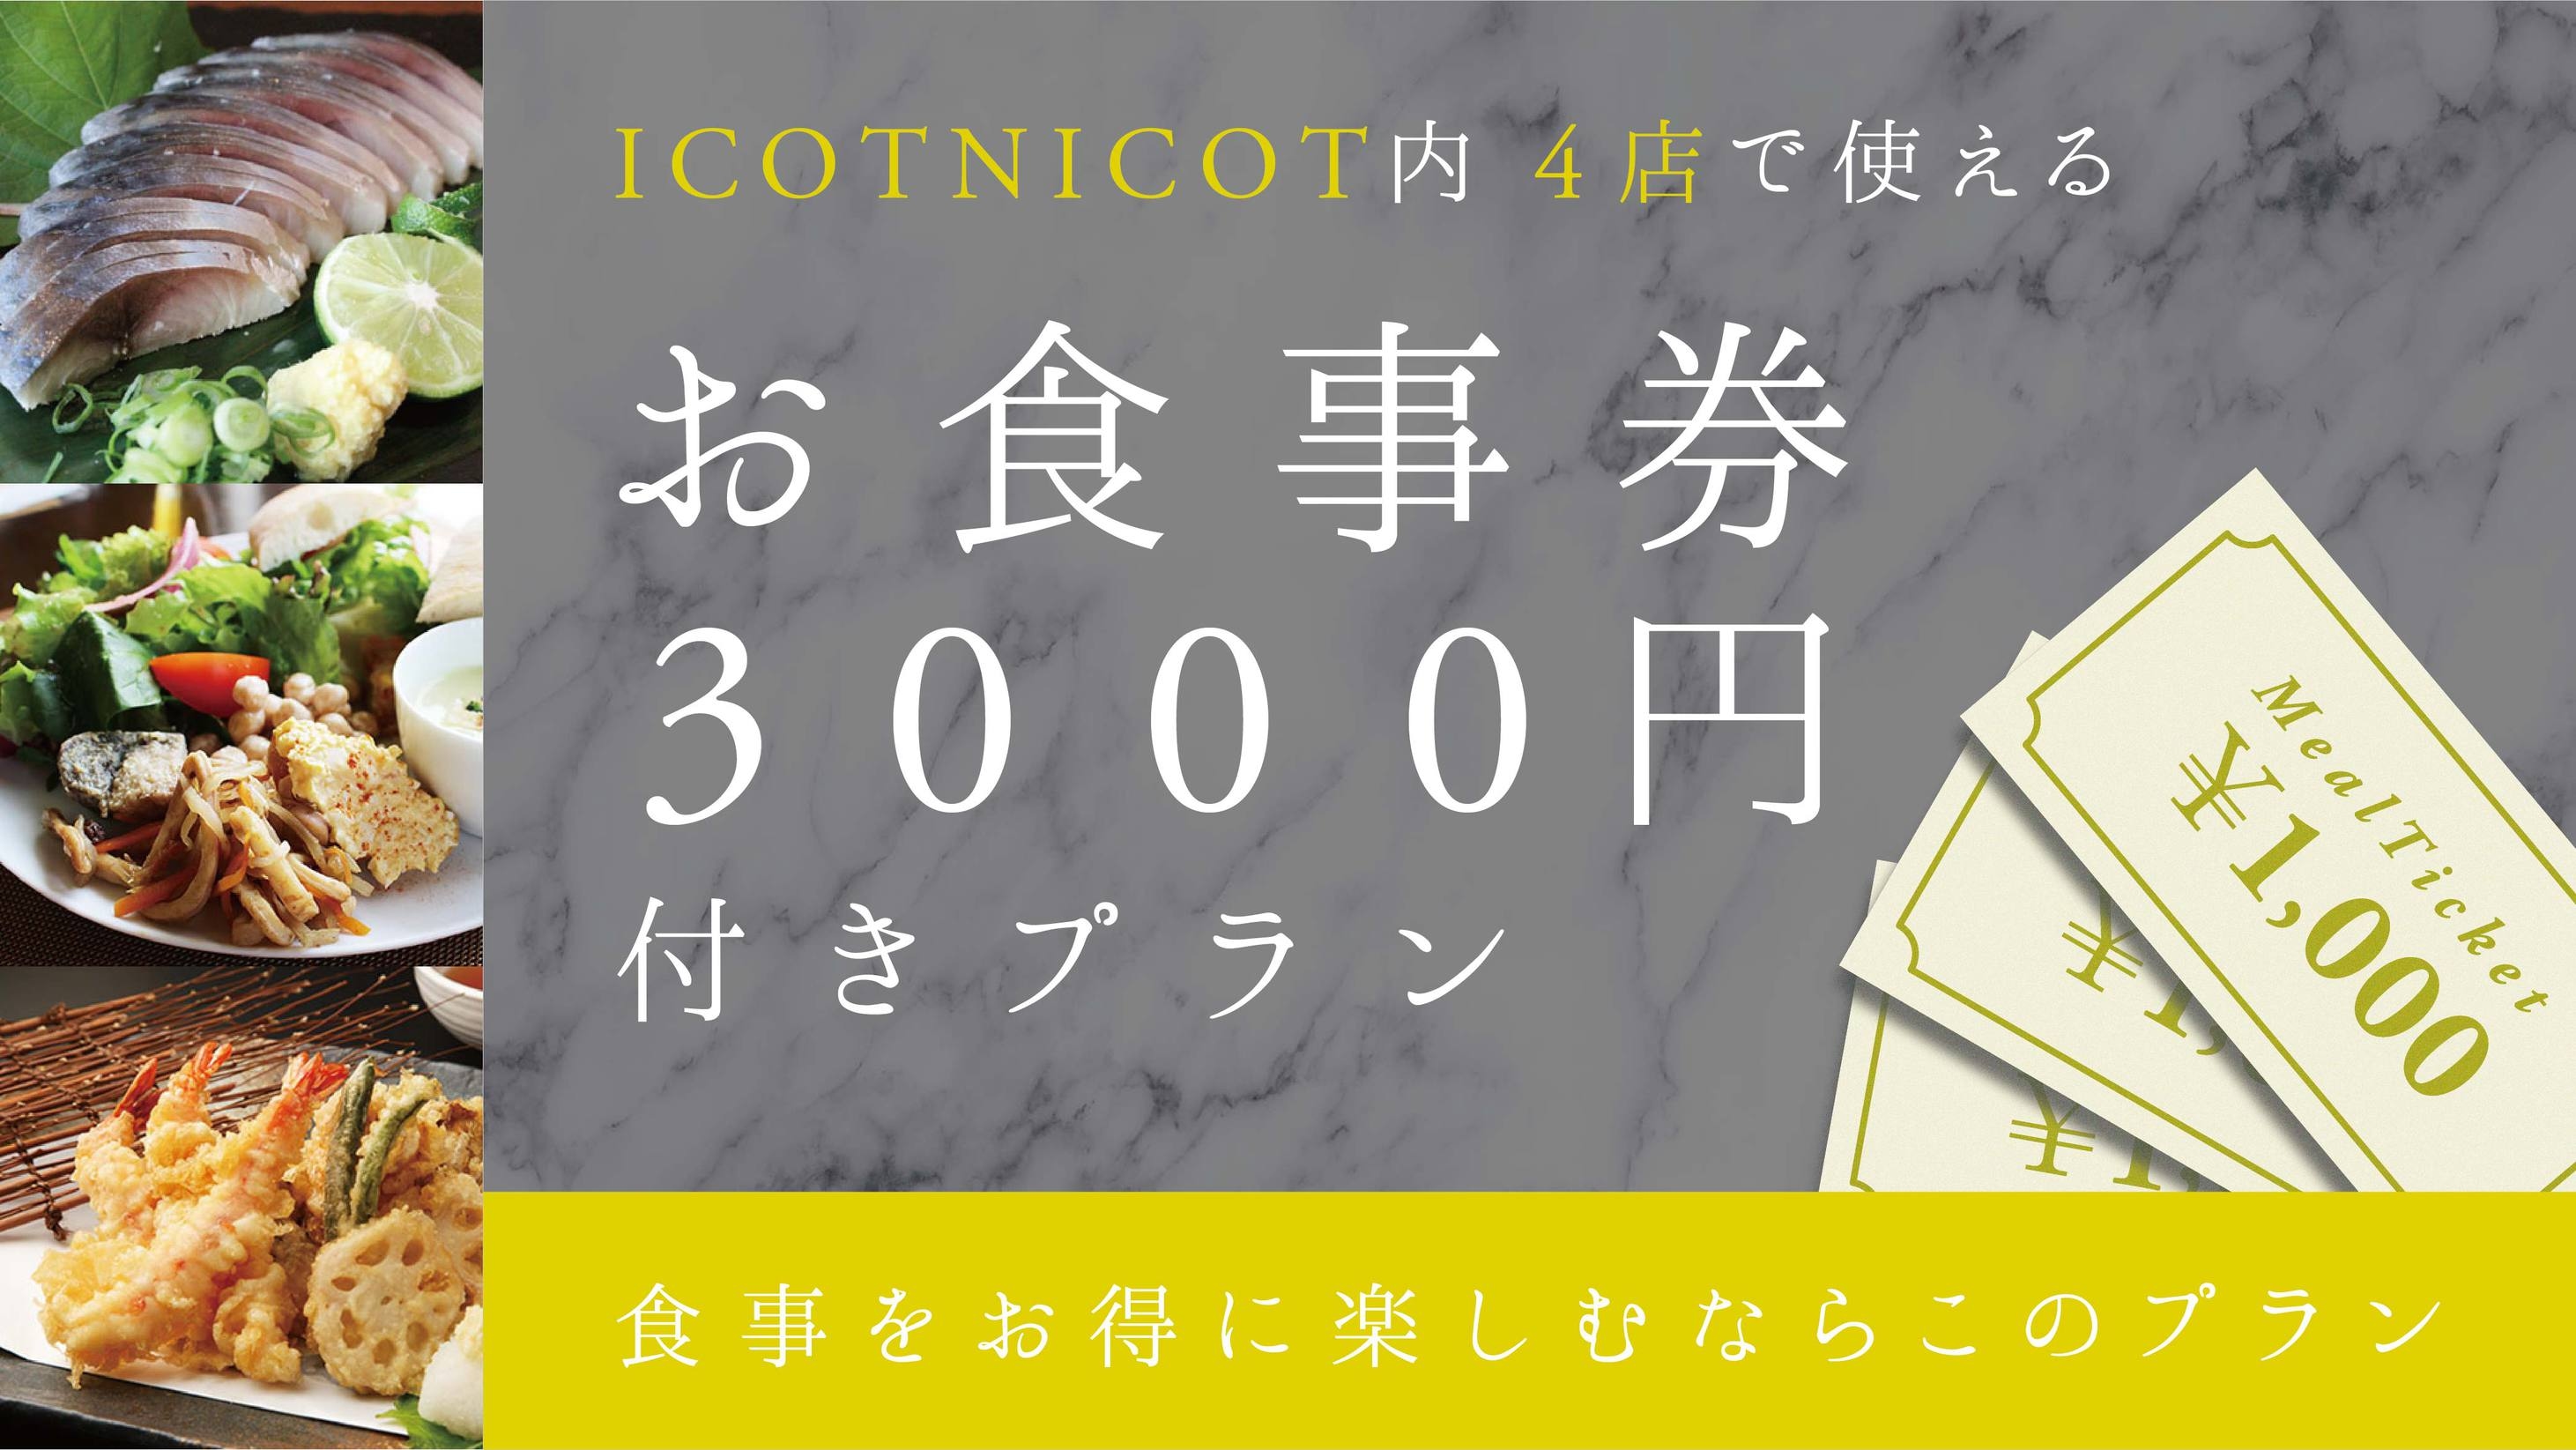 【一般客室】ICOTNICOT内 4店で使える！お食事券3000円付きプラン【1泊2食付き】